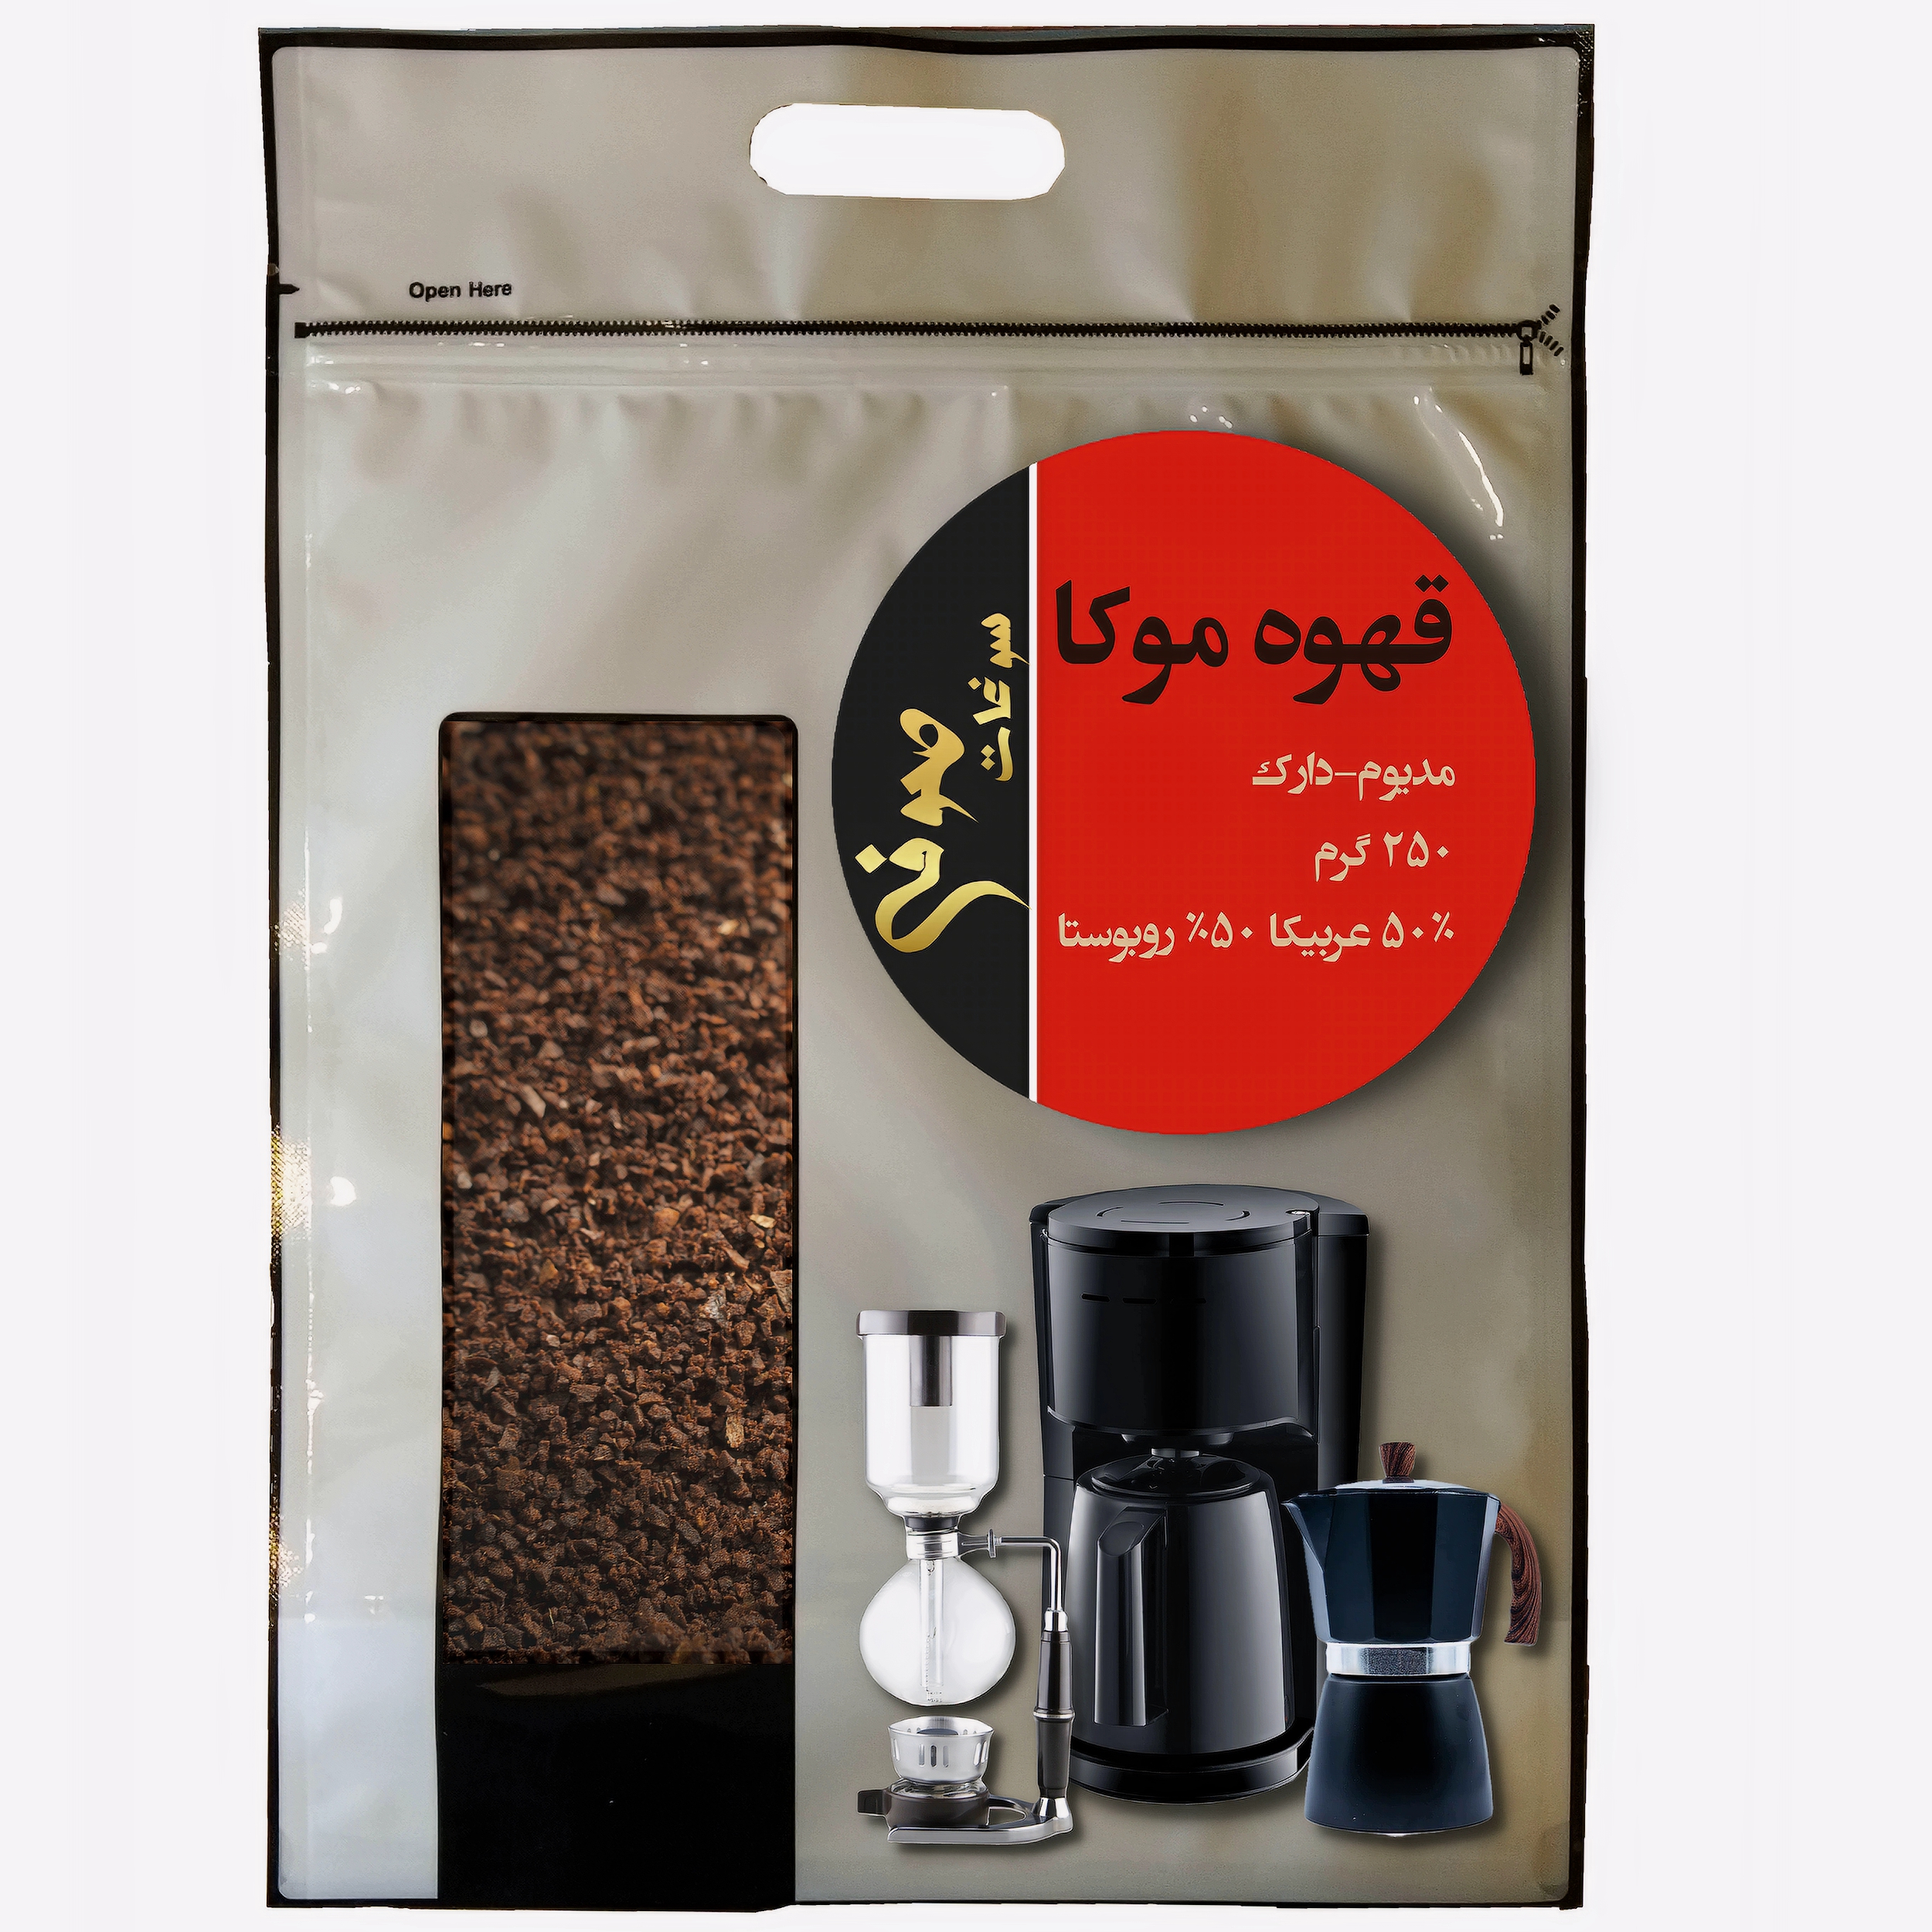 پودر قهوه موکا مدیوم دارک 50% عربیکا 50% روبوستا صوفی - 250 گرم